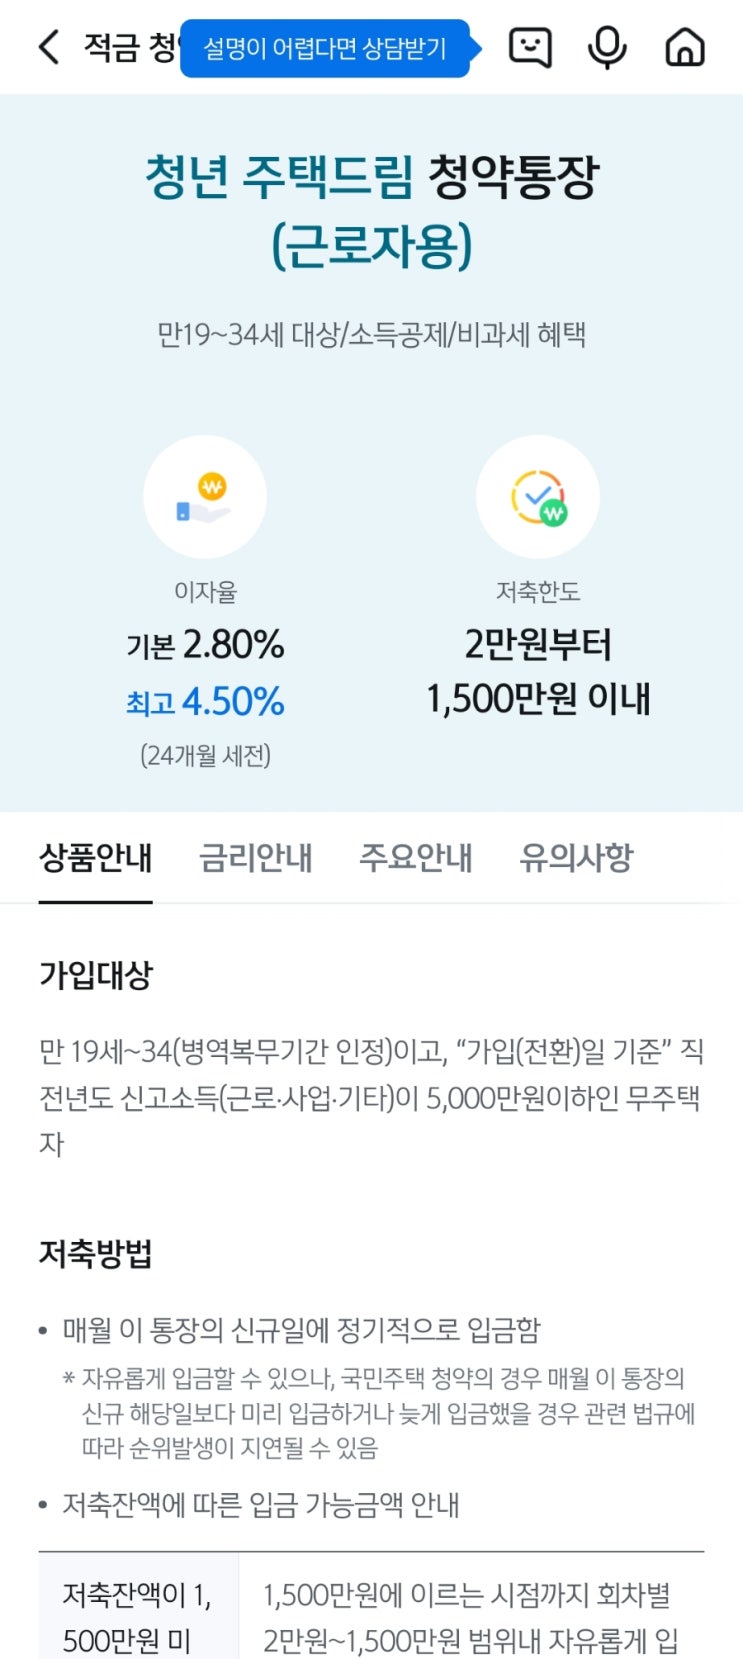 신한은행 청년 주택 드림 청약통장 전환 후기 + 이자 수령